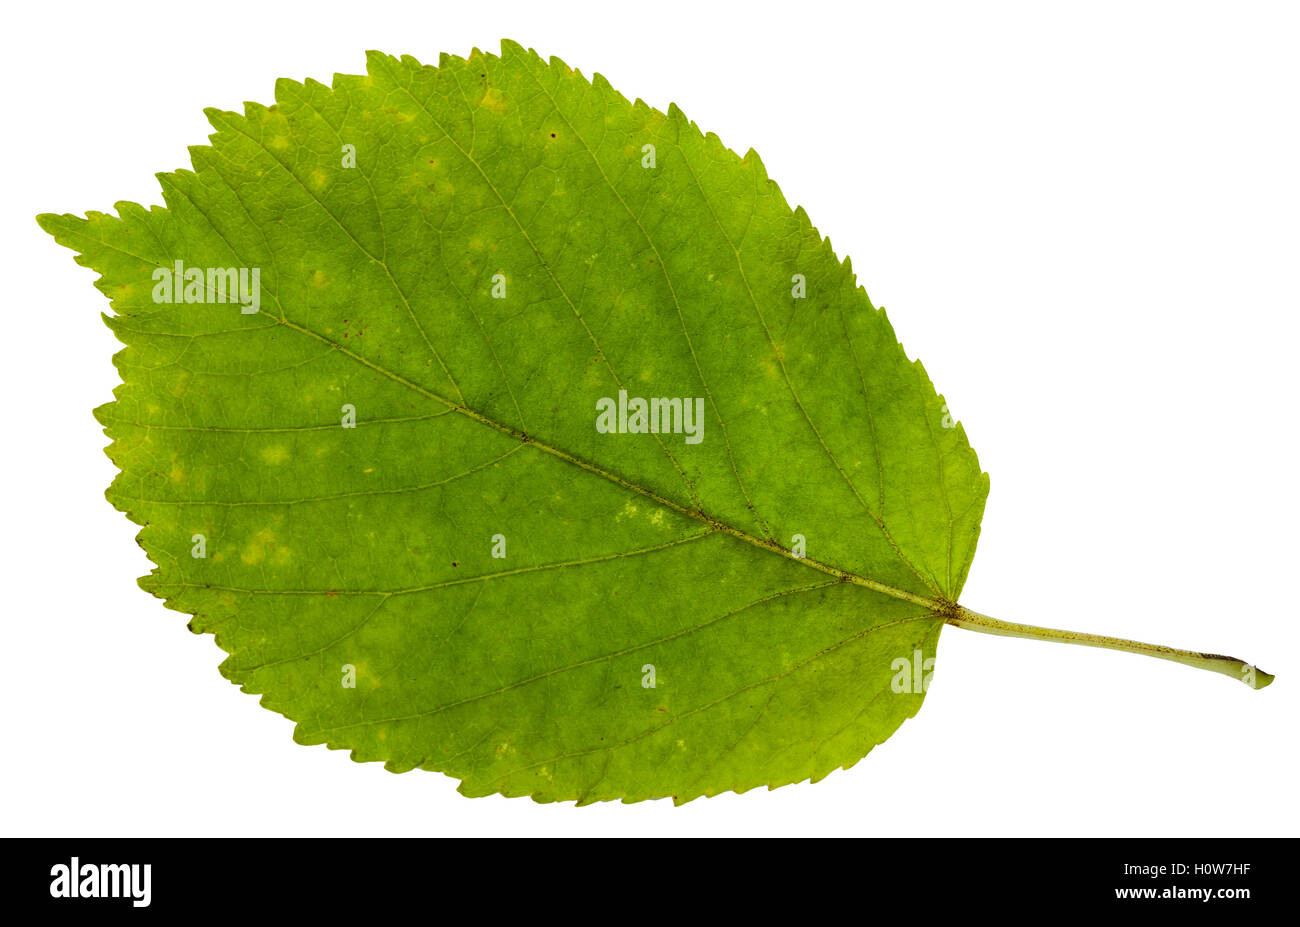 Vert feuille d'érable à feuilles de frêne (Acer negundo, fort ancien, boxelder érable, frêne, érable à feuilles de frêne érable) isolé sur bac blanc Banque D'Images